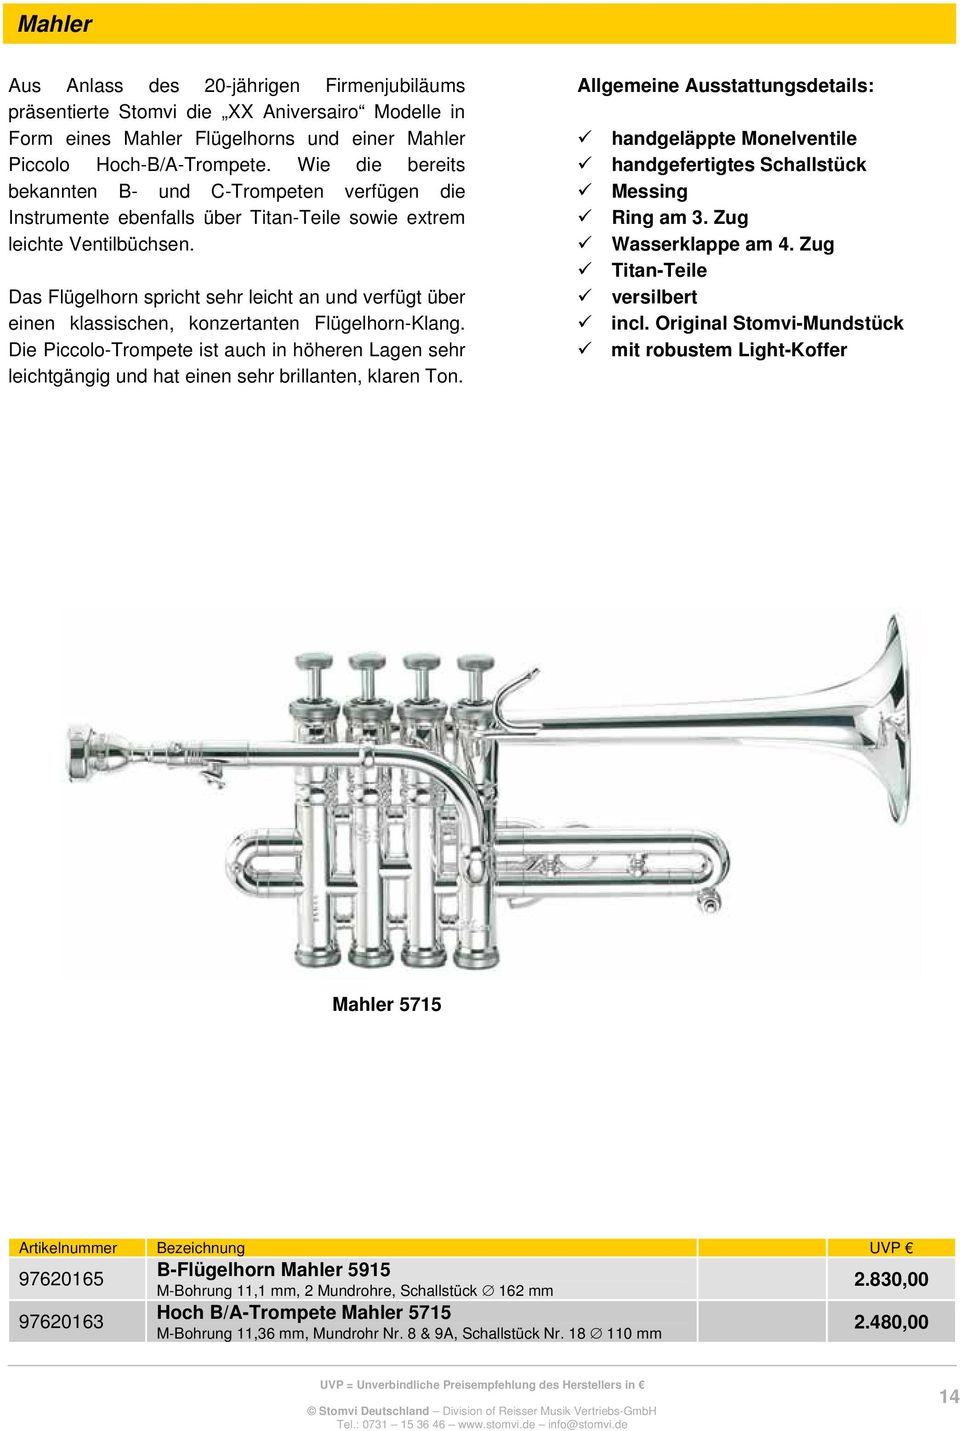 Das Flügelhorn spricht sehr leicht an und verfügt über einen klassischen, konzertanten Flügelhorn-Klang.